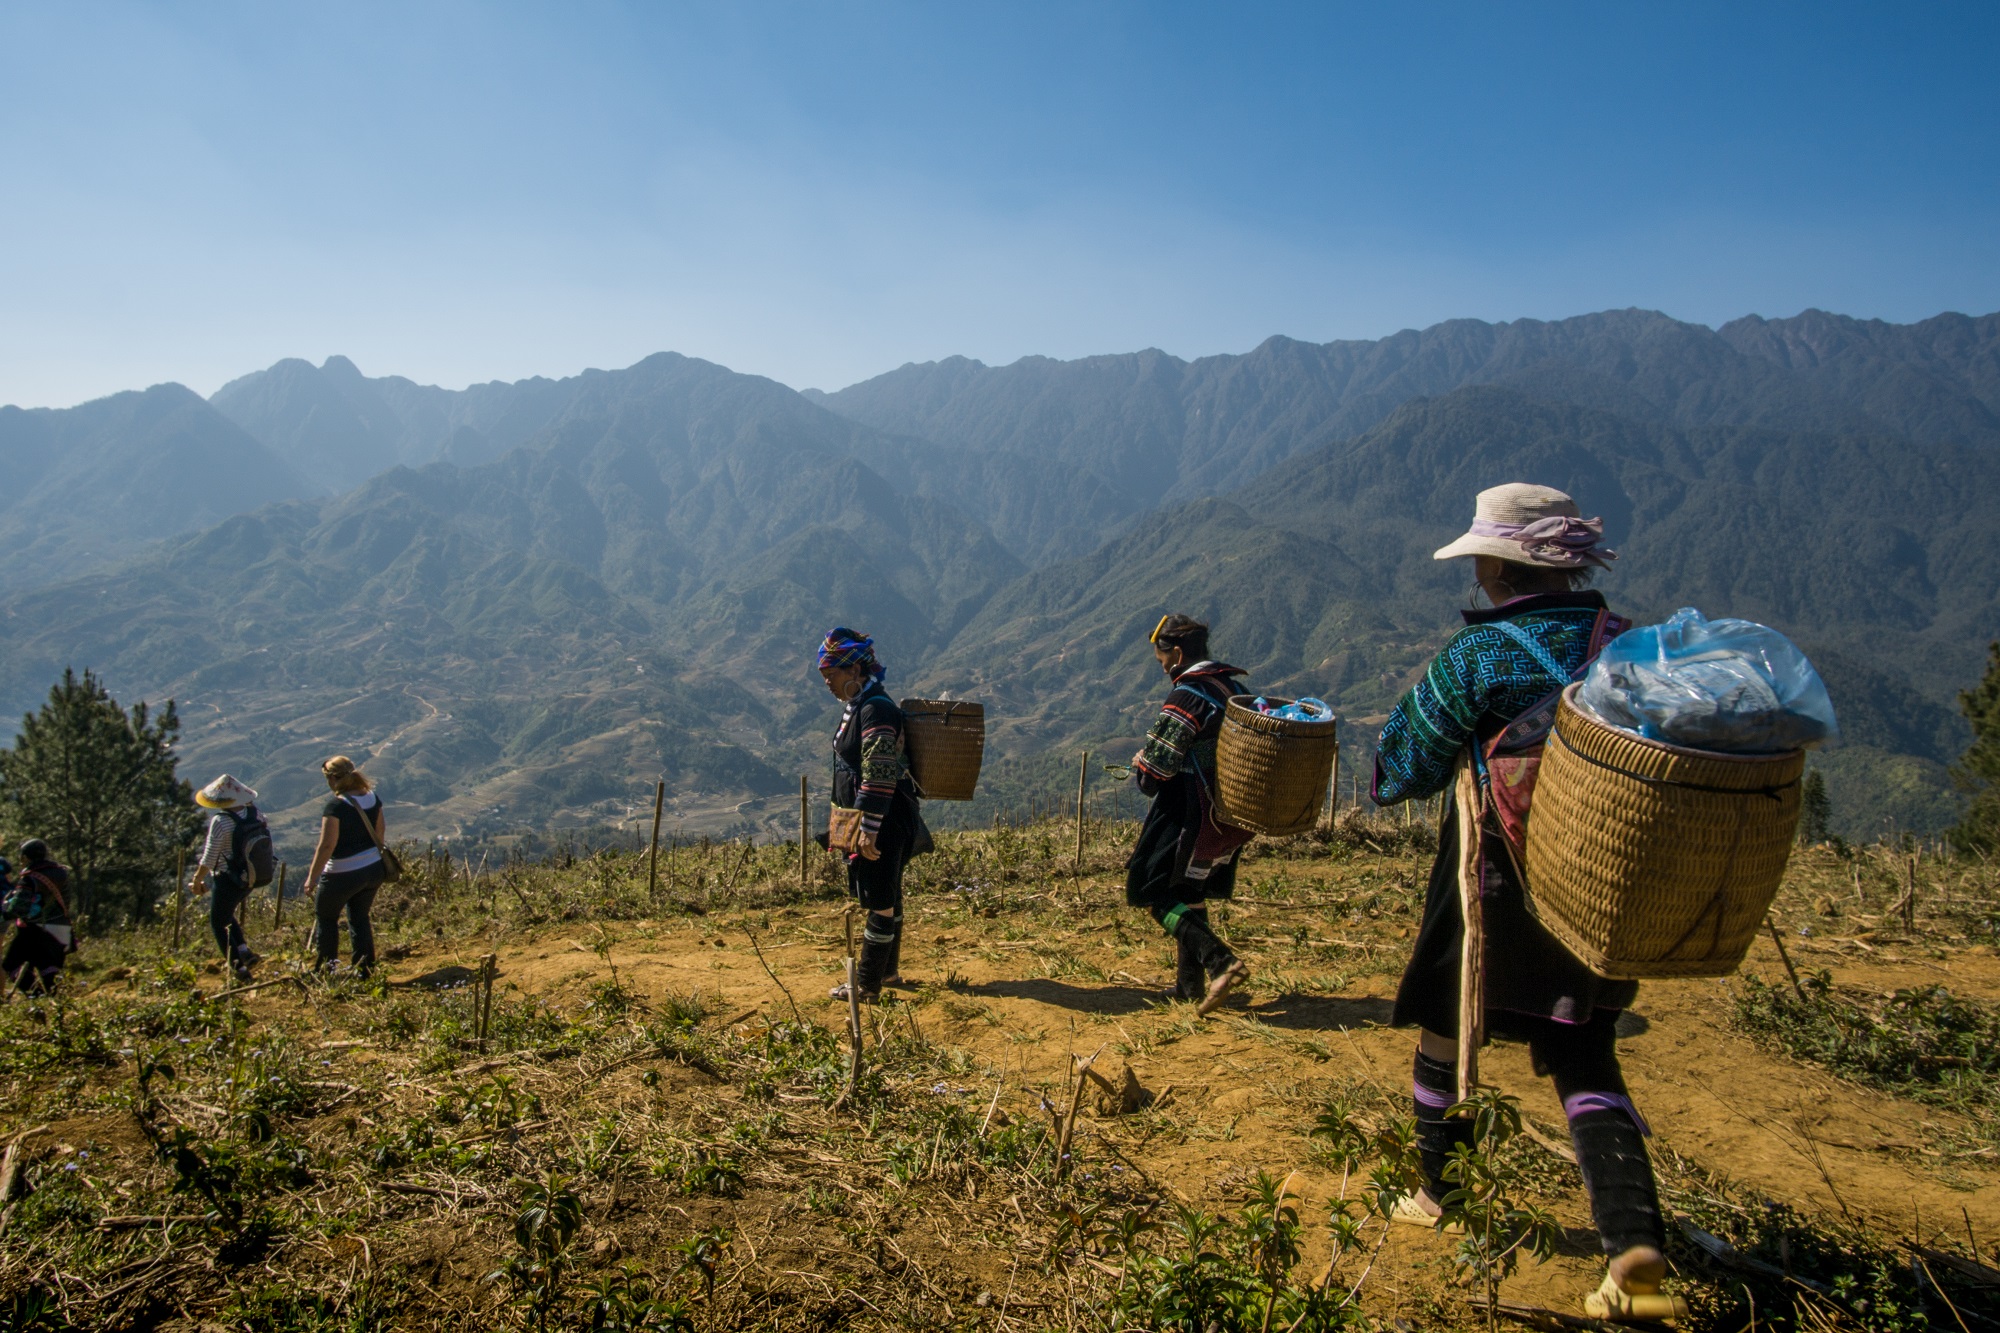 Fansipan Mountain trekking is great for outdoor activities in northern Vietnam